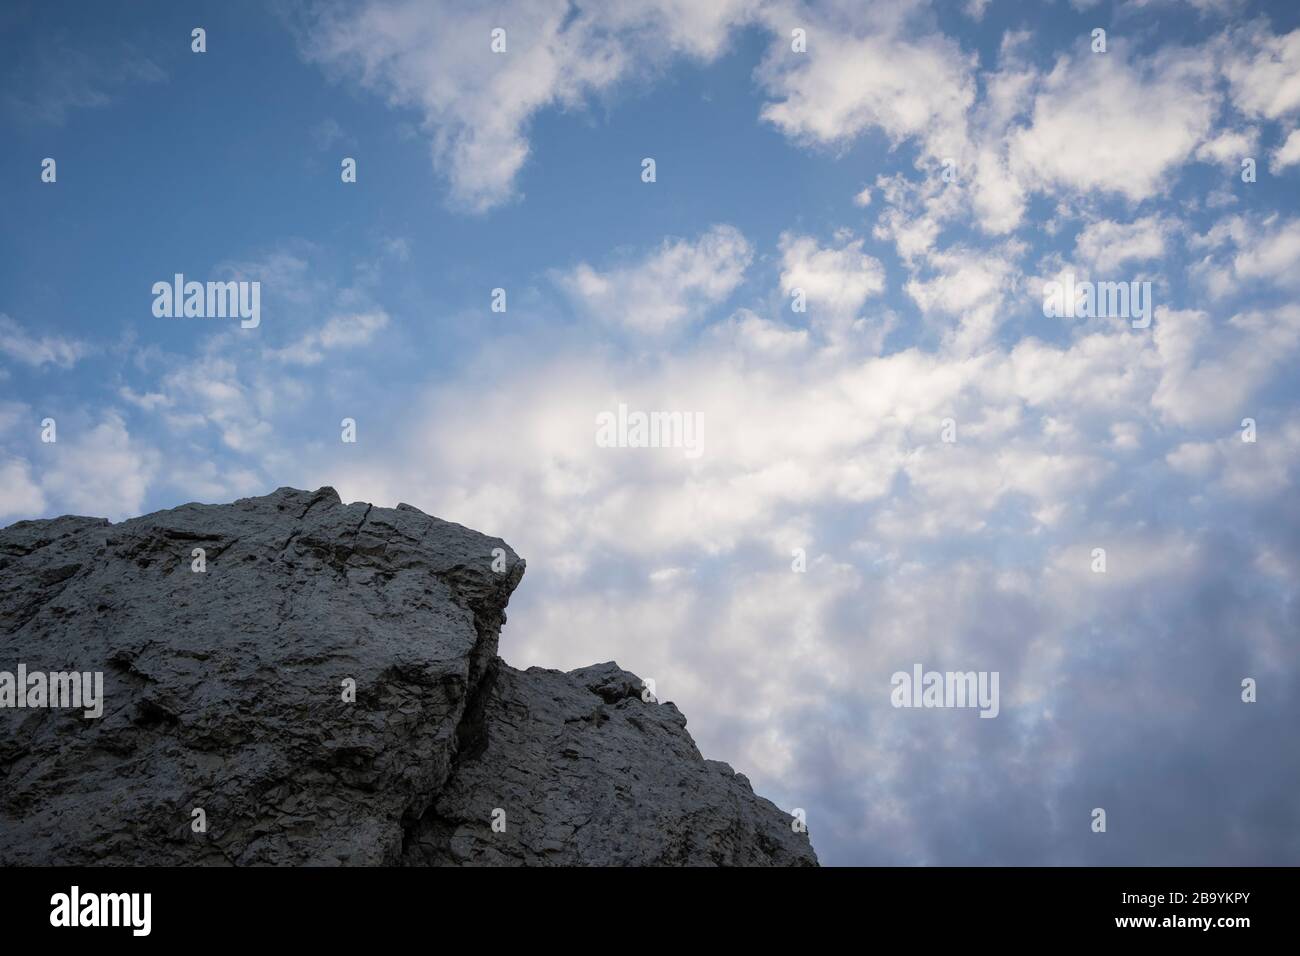 Cresta di pietra calcarea con nuvole di fondo. Parco naturale ELS Ports. Catalogna. Spagna. Foto Stock